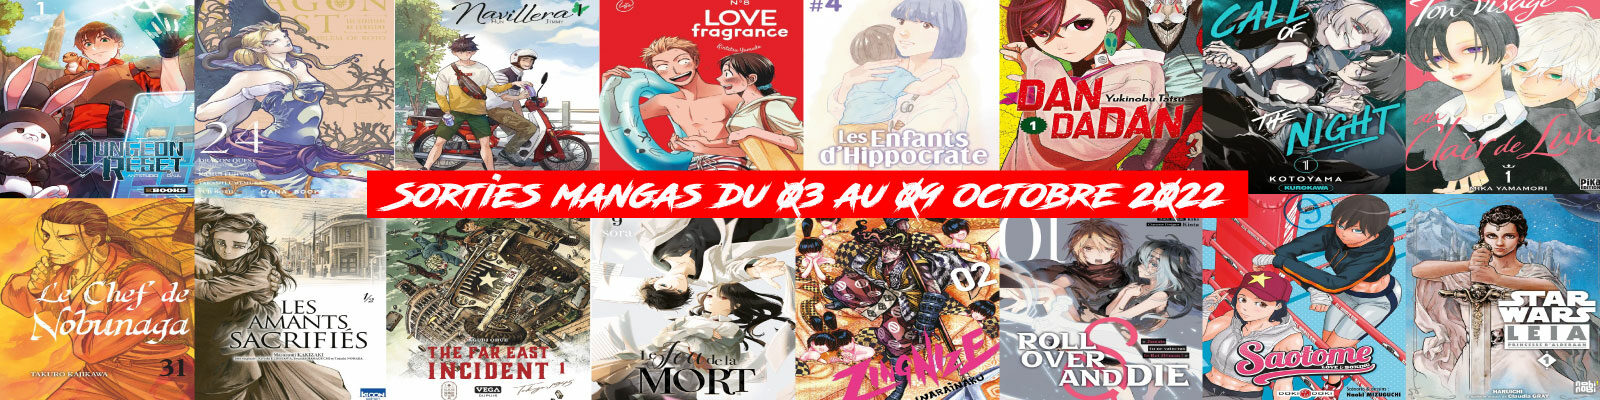 Sorties mangas-du-03-au-09-octobre-2022--2